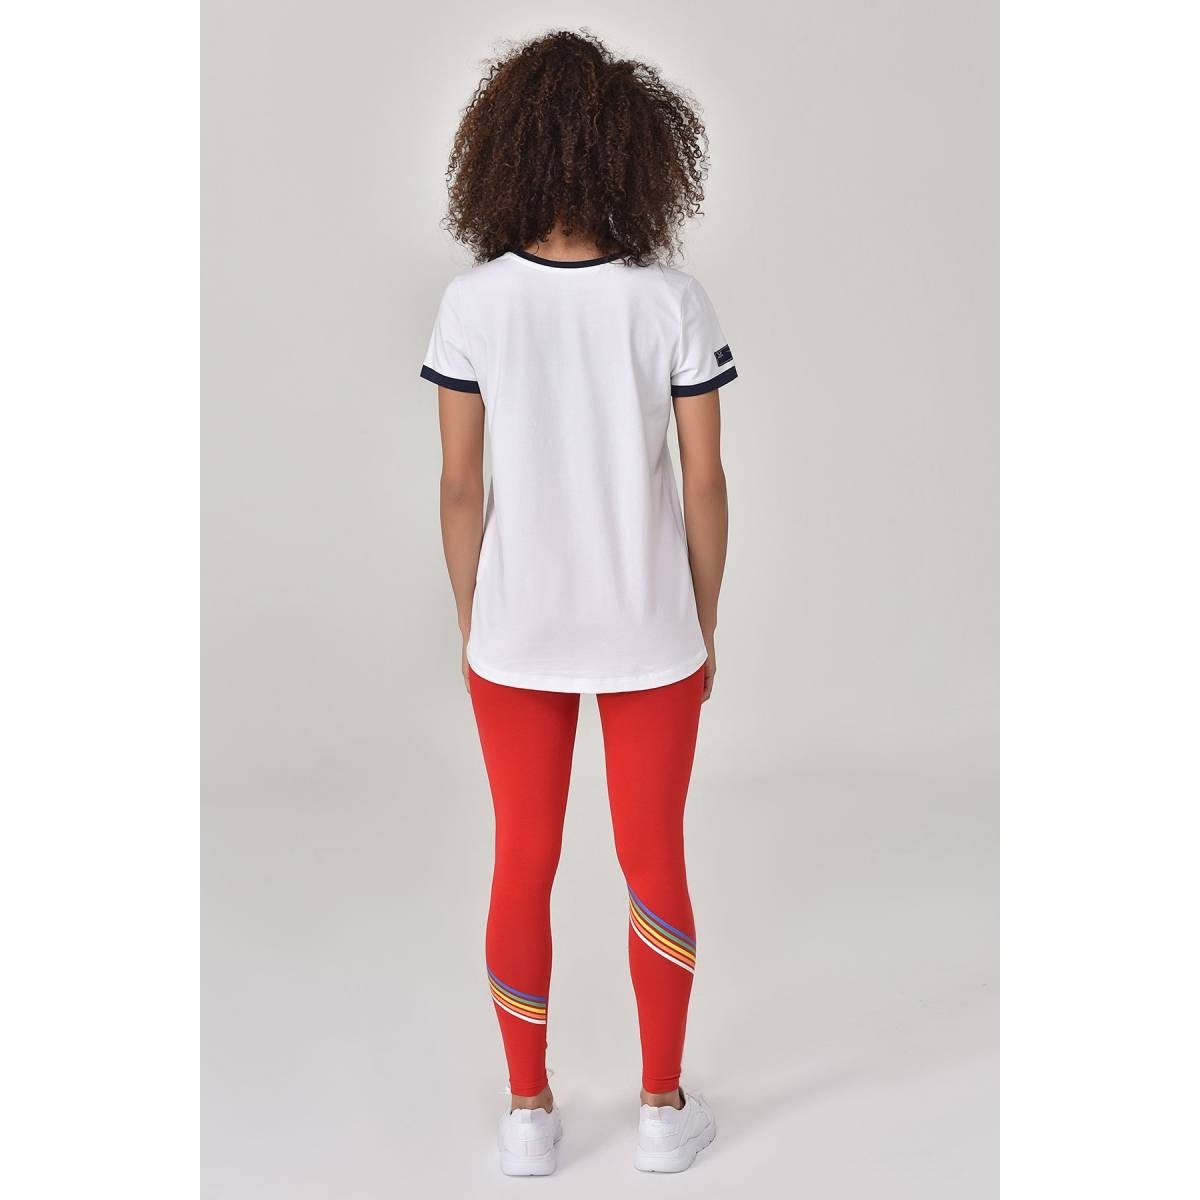 Flo Beyaz Kadın T-shirt  GS-8070. 7